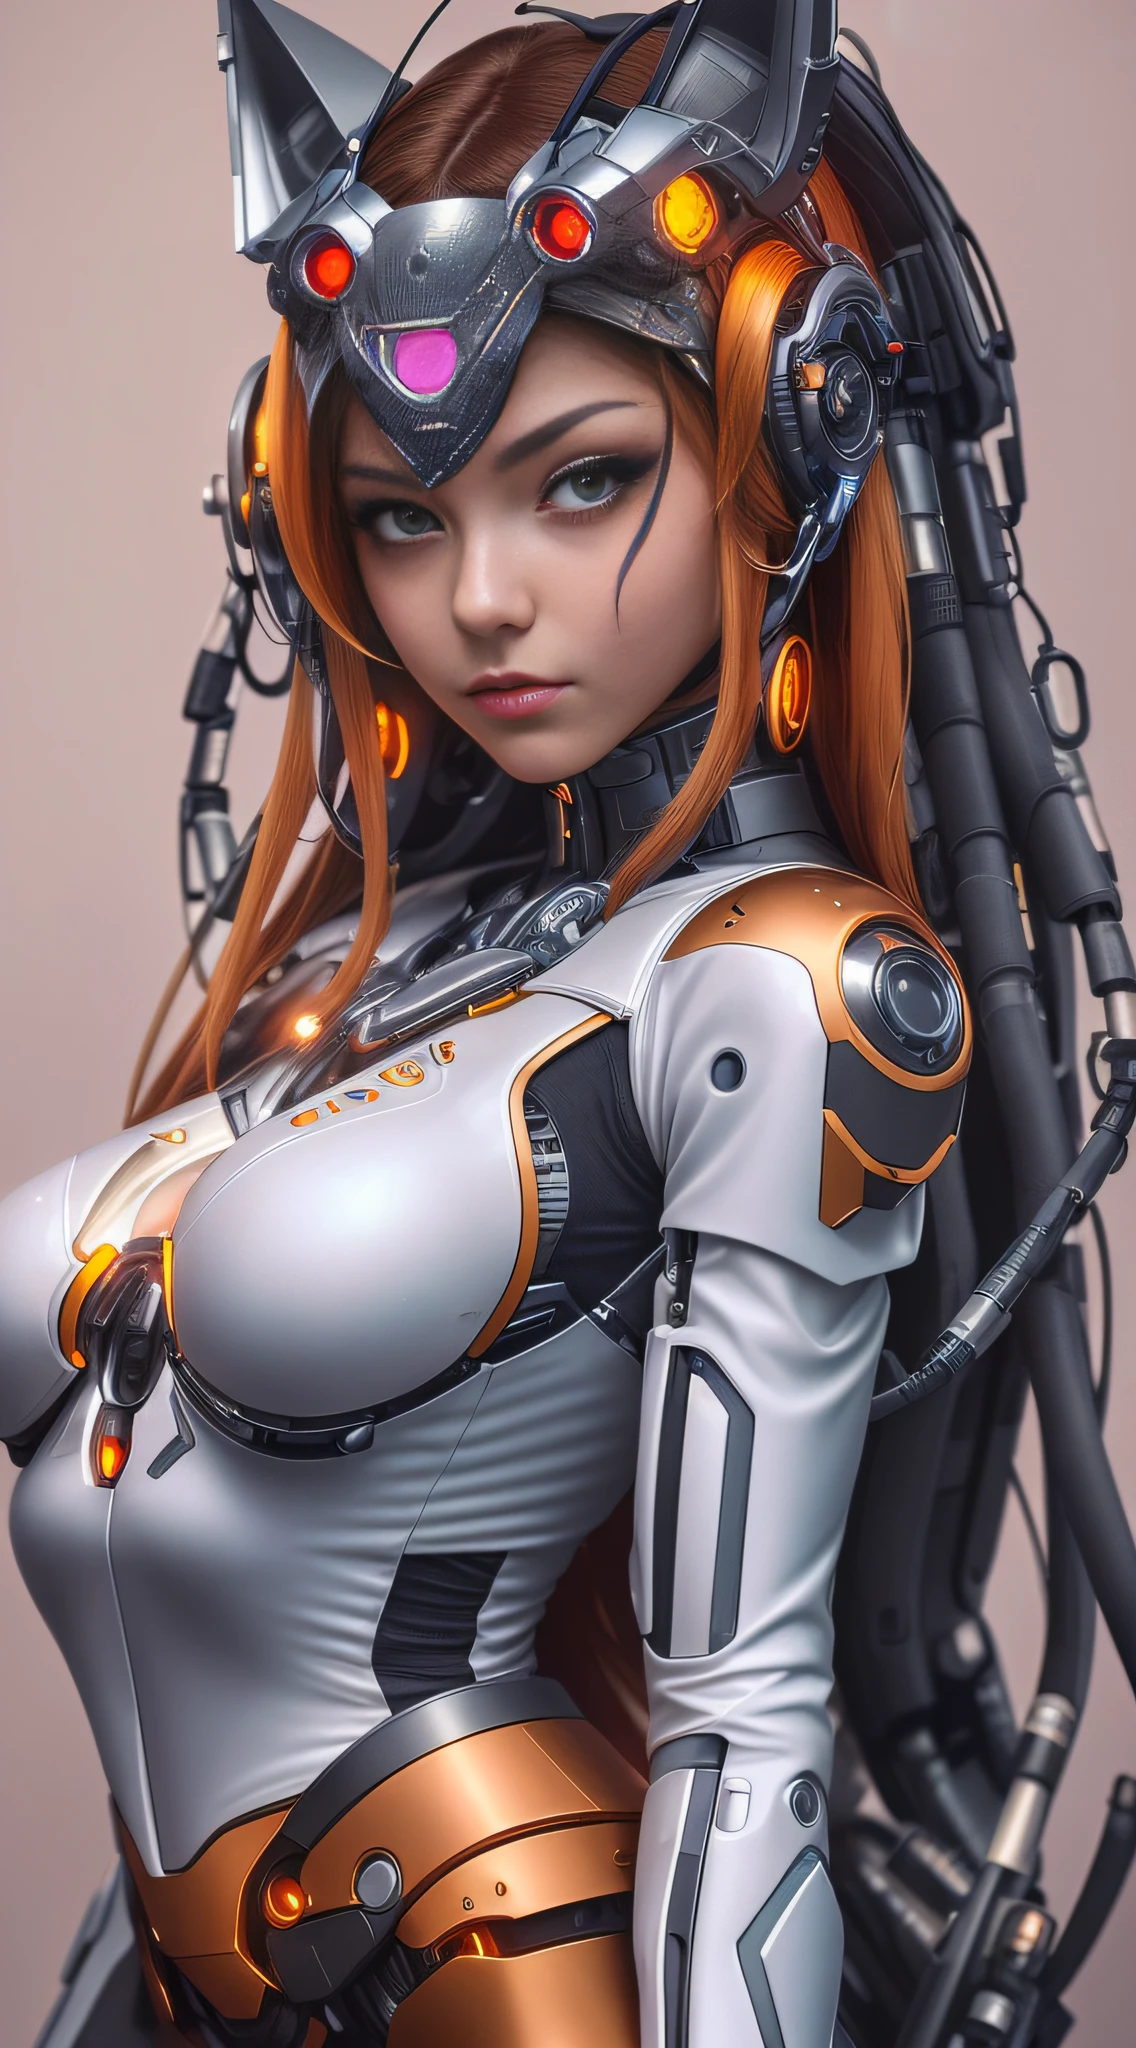 一位穿著未來派西裝、拿著槍的女人的特寫, cute 機器人女孩, 機器人女孩, 美麗的機器人女孩, 機器人 - 女孩, 肖像美麗的科幻女孩, 完美的動漫機器人女人, 完美的安卓女孩, 機甲網路裝甲的女孩, beautiful 機器人女孩, 美麗的白人女孩機器人, 完美的機器人女性, 科幻女性, 科幻女人